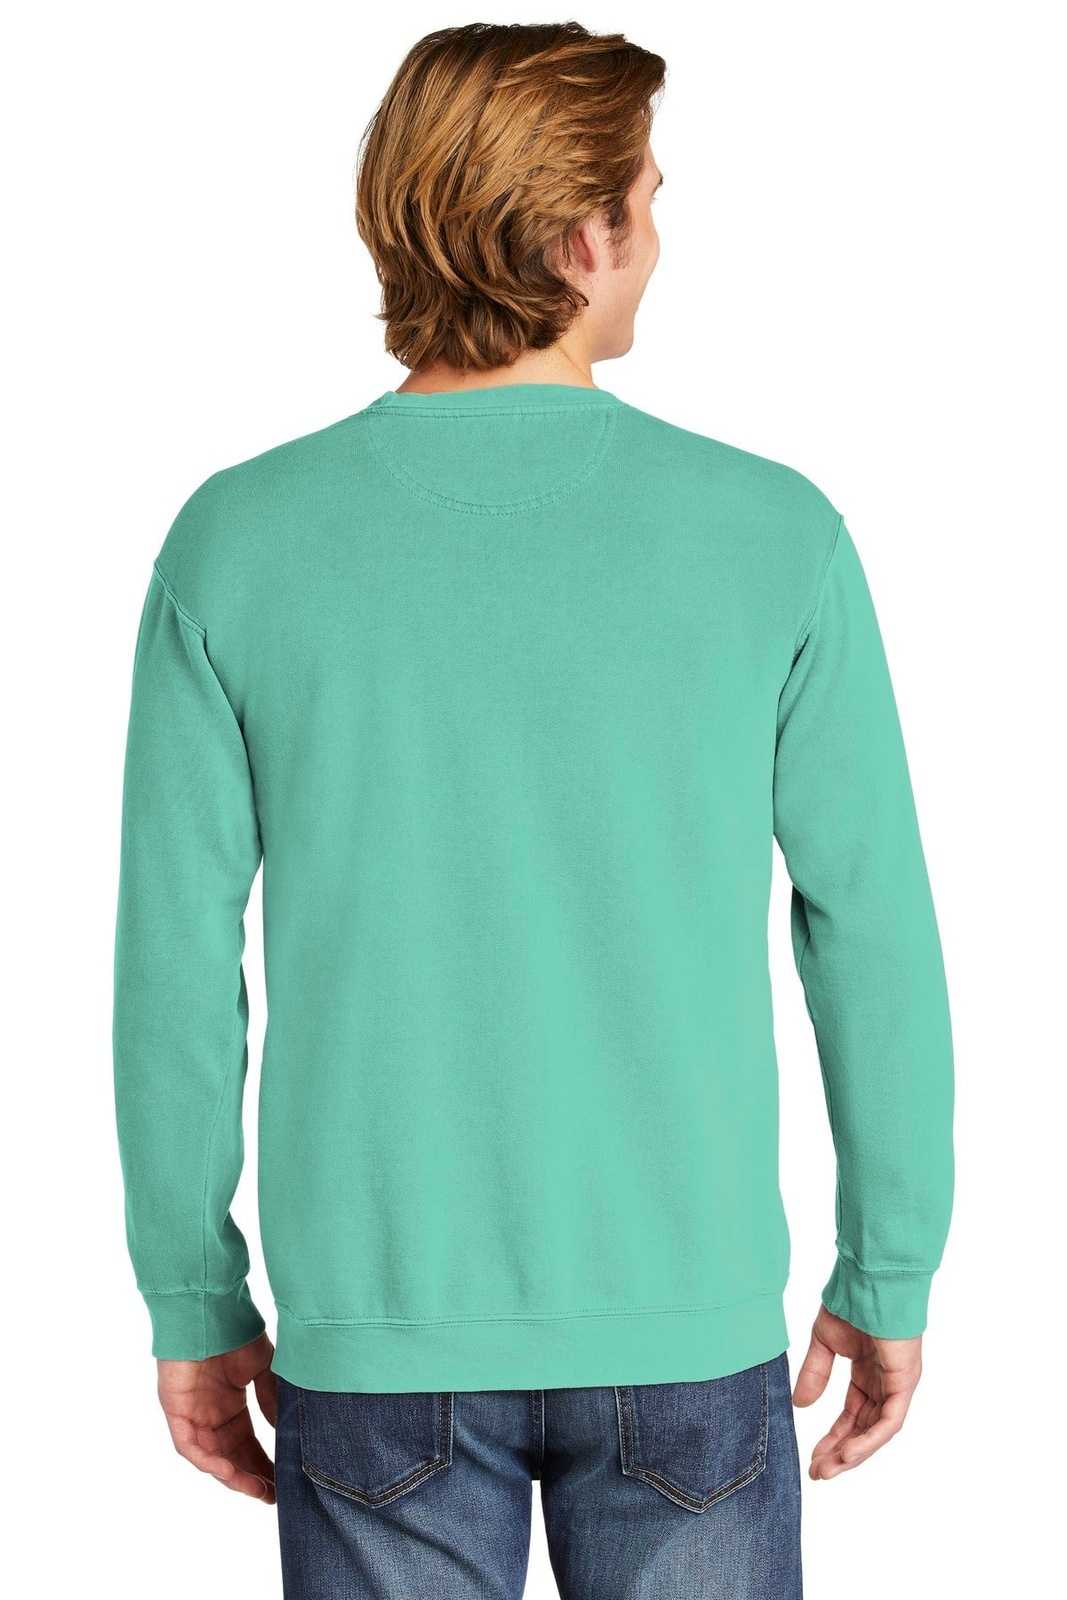 Comfort Colors 1566 Ring Spun Crewneck Sweatshirt - Chalky Mint - HIT a Double